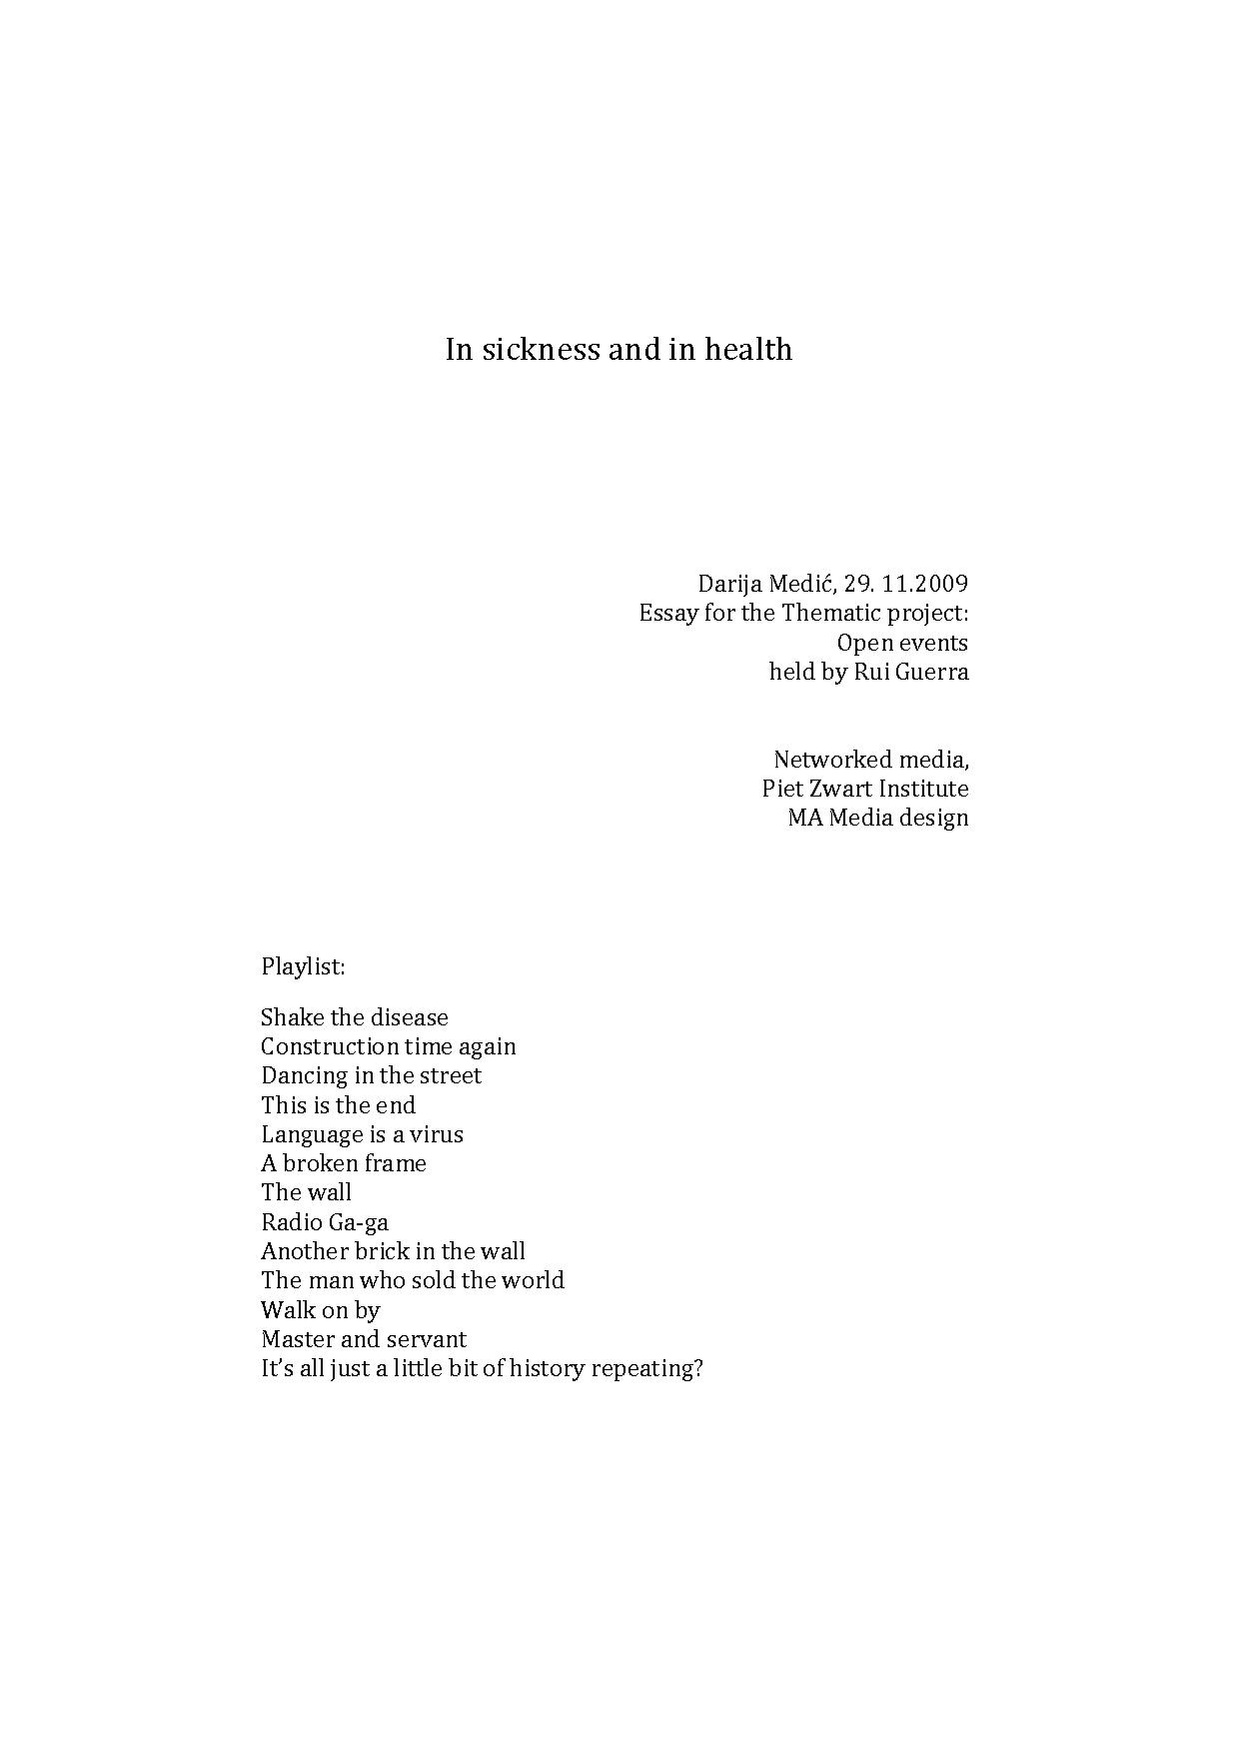 User Darija in sickness and in health-essay darija medic.pdf